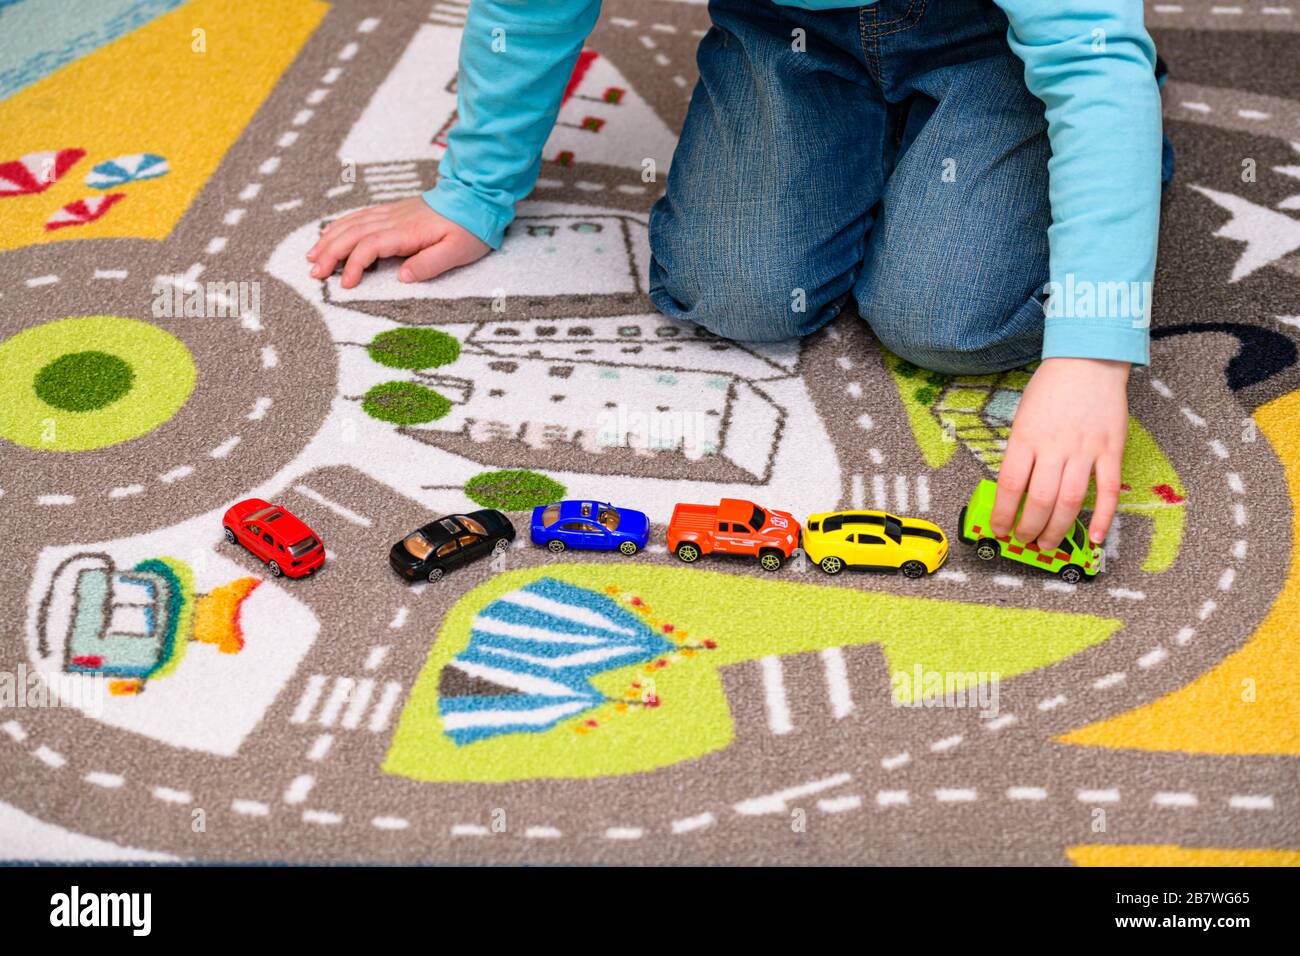 Ragazzo di cinque anni che gioca e allineano le auto giocattolo su un tappetino da gioco con le strade. Il ragazzo è vestito di jeans blu e tiene un giocattolo ambulanza. Foto Stock